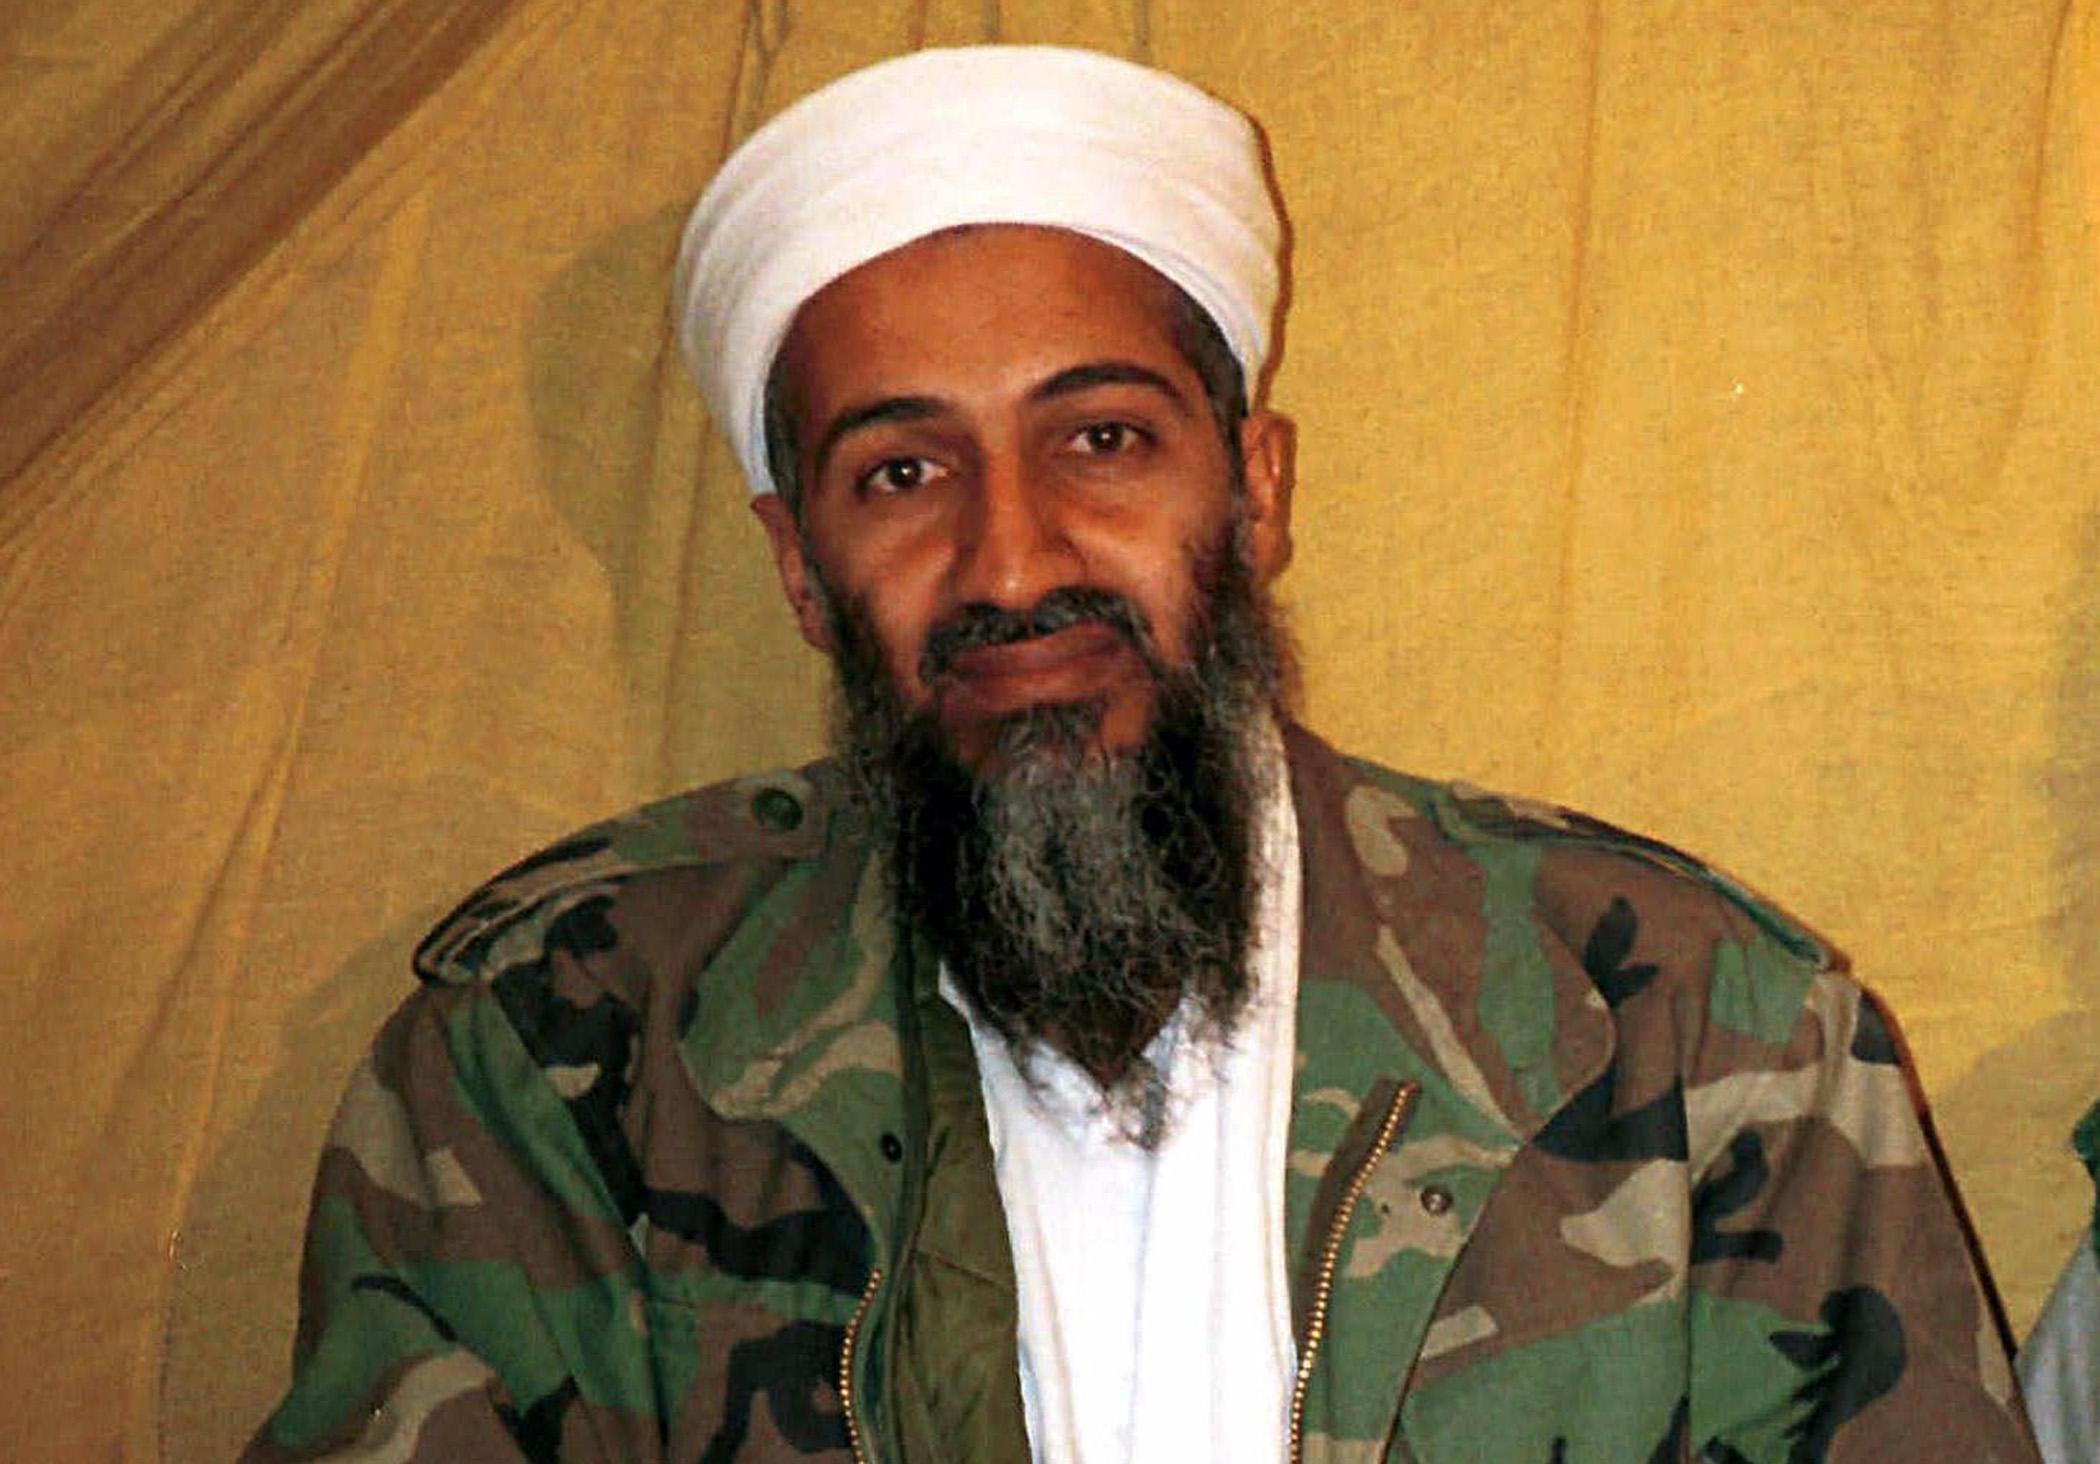 Bin Laden:  Beri mu bio portparol za Evropu - Avaz